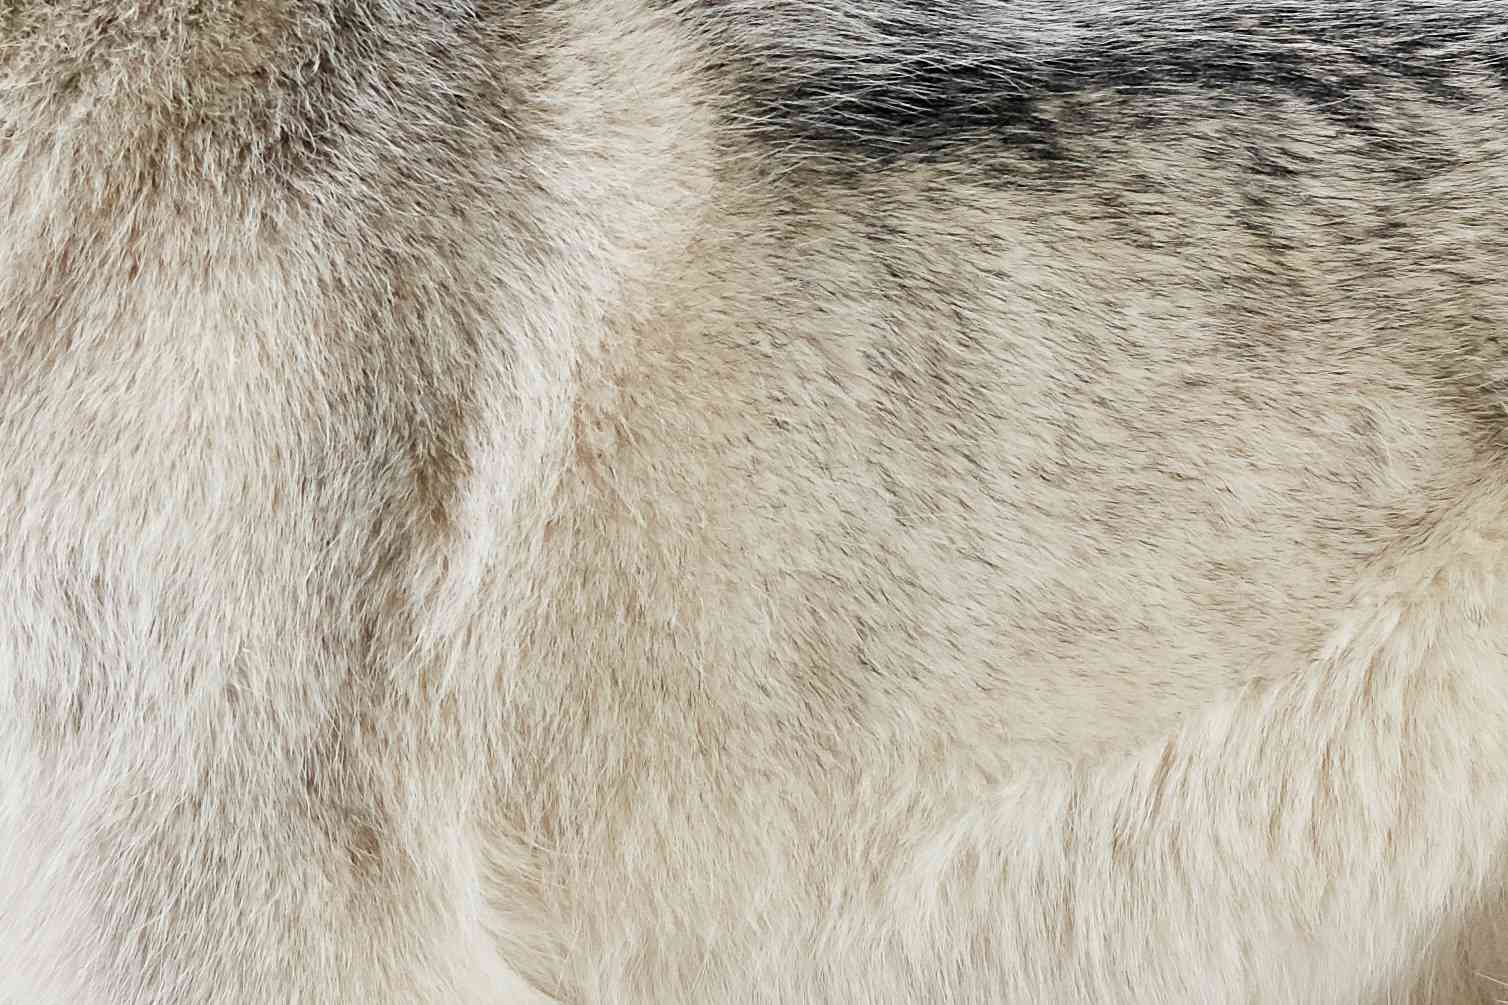 Closeup of a Siberian Husky's fur